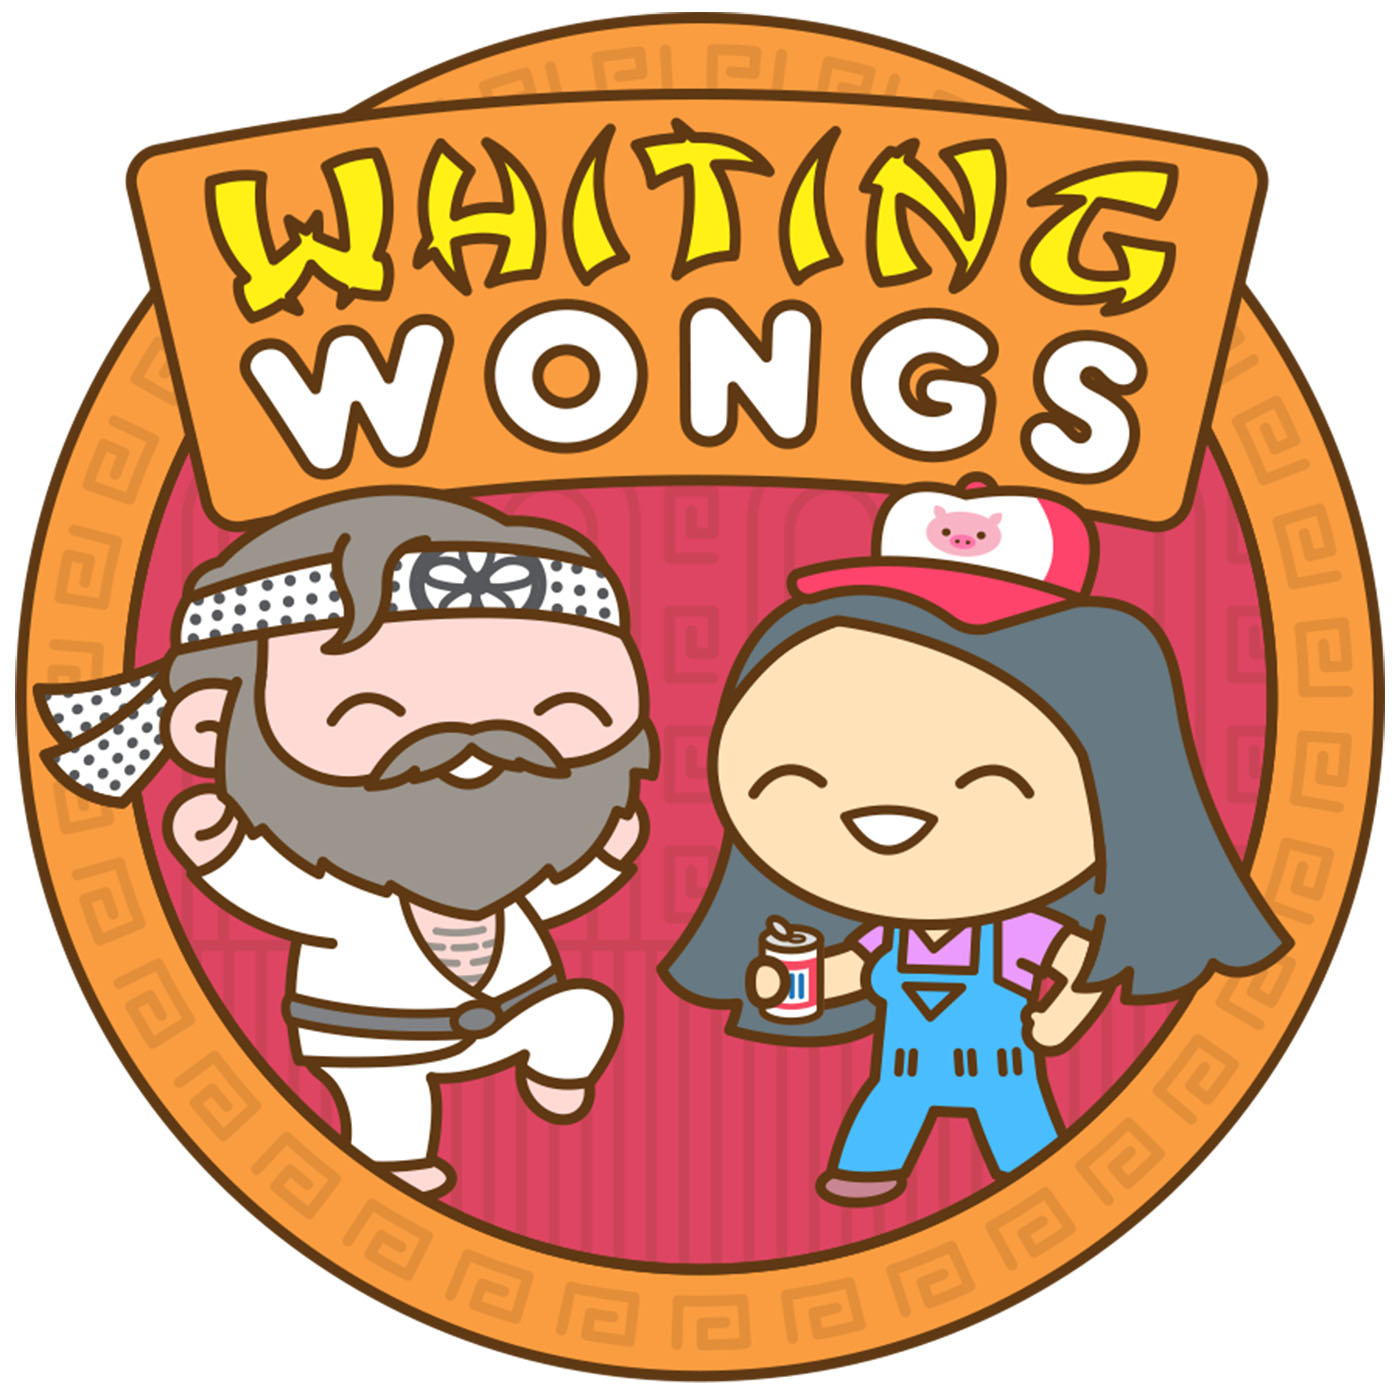 Whiting Wongs